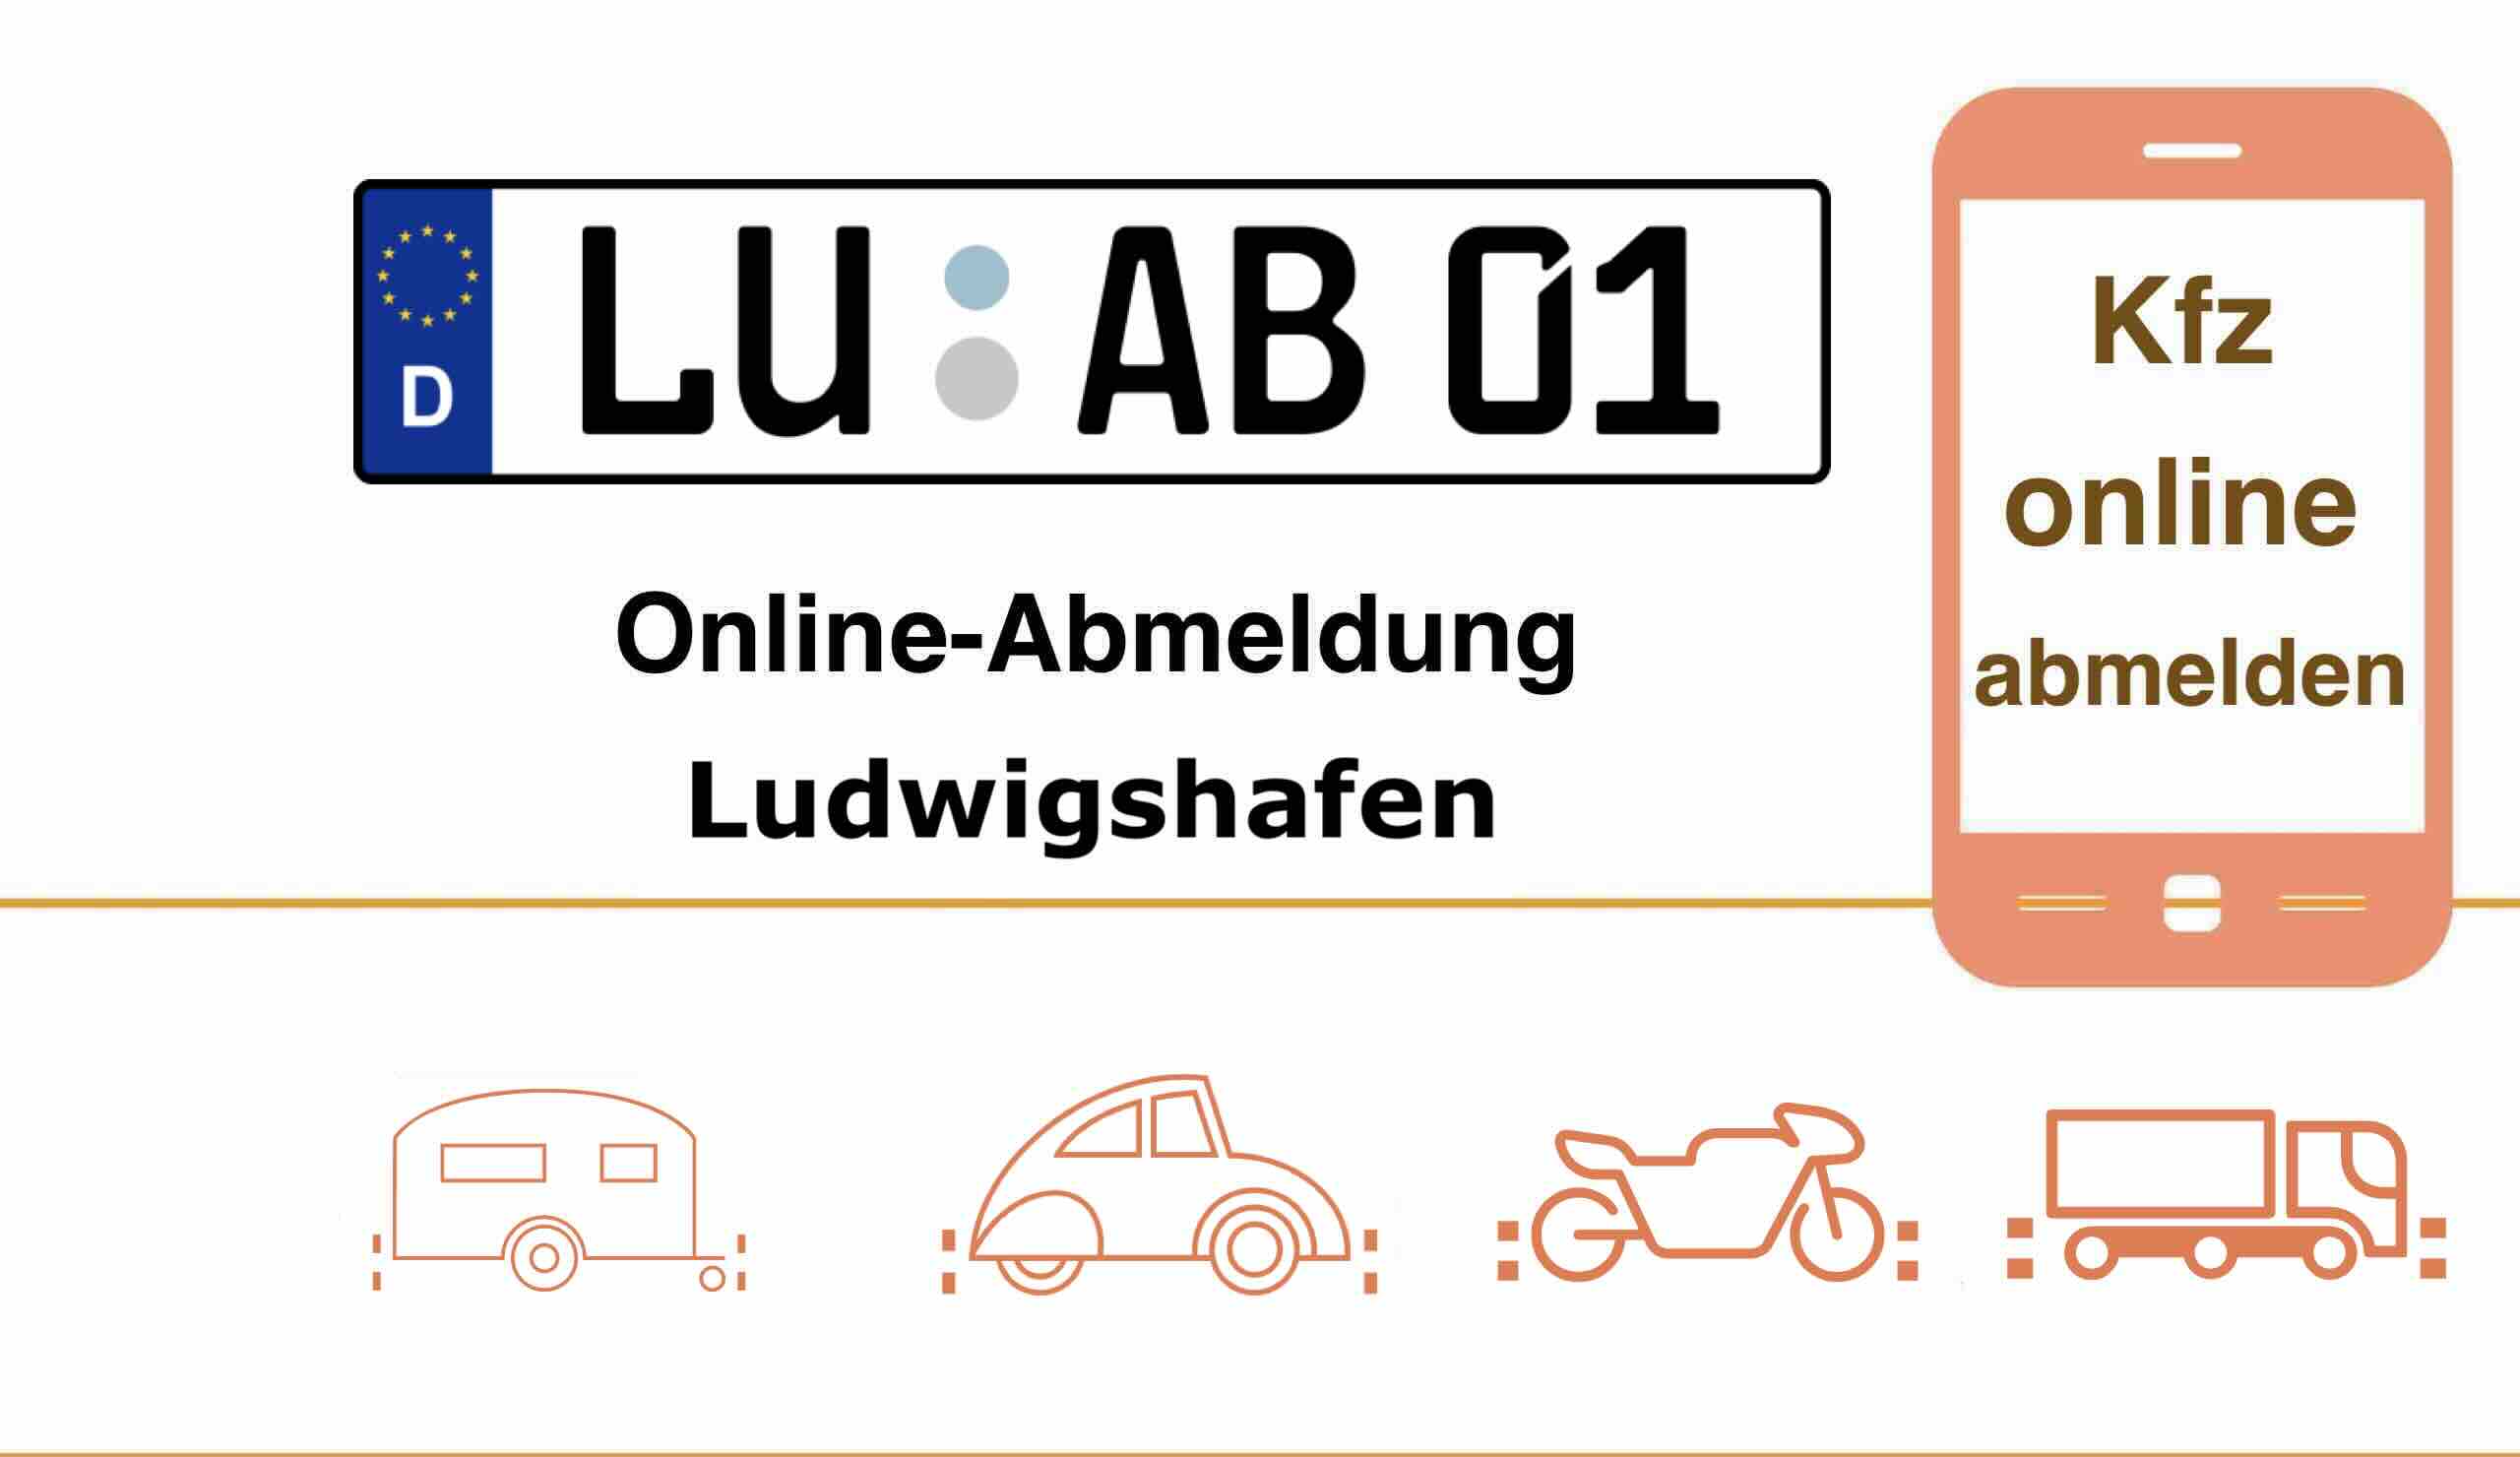 Online-Abmeldung in Ludwigshafen 